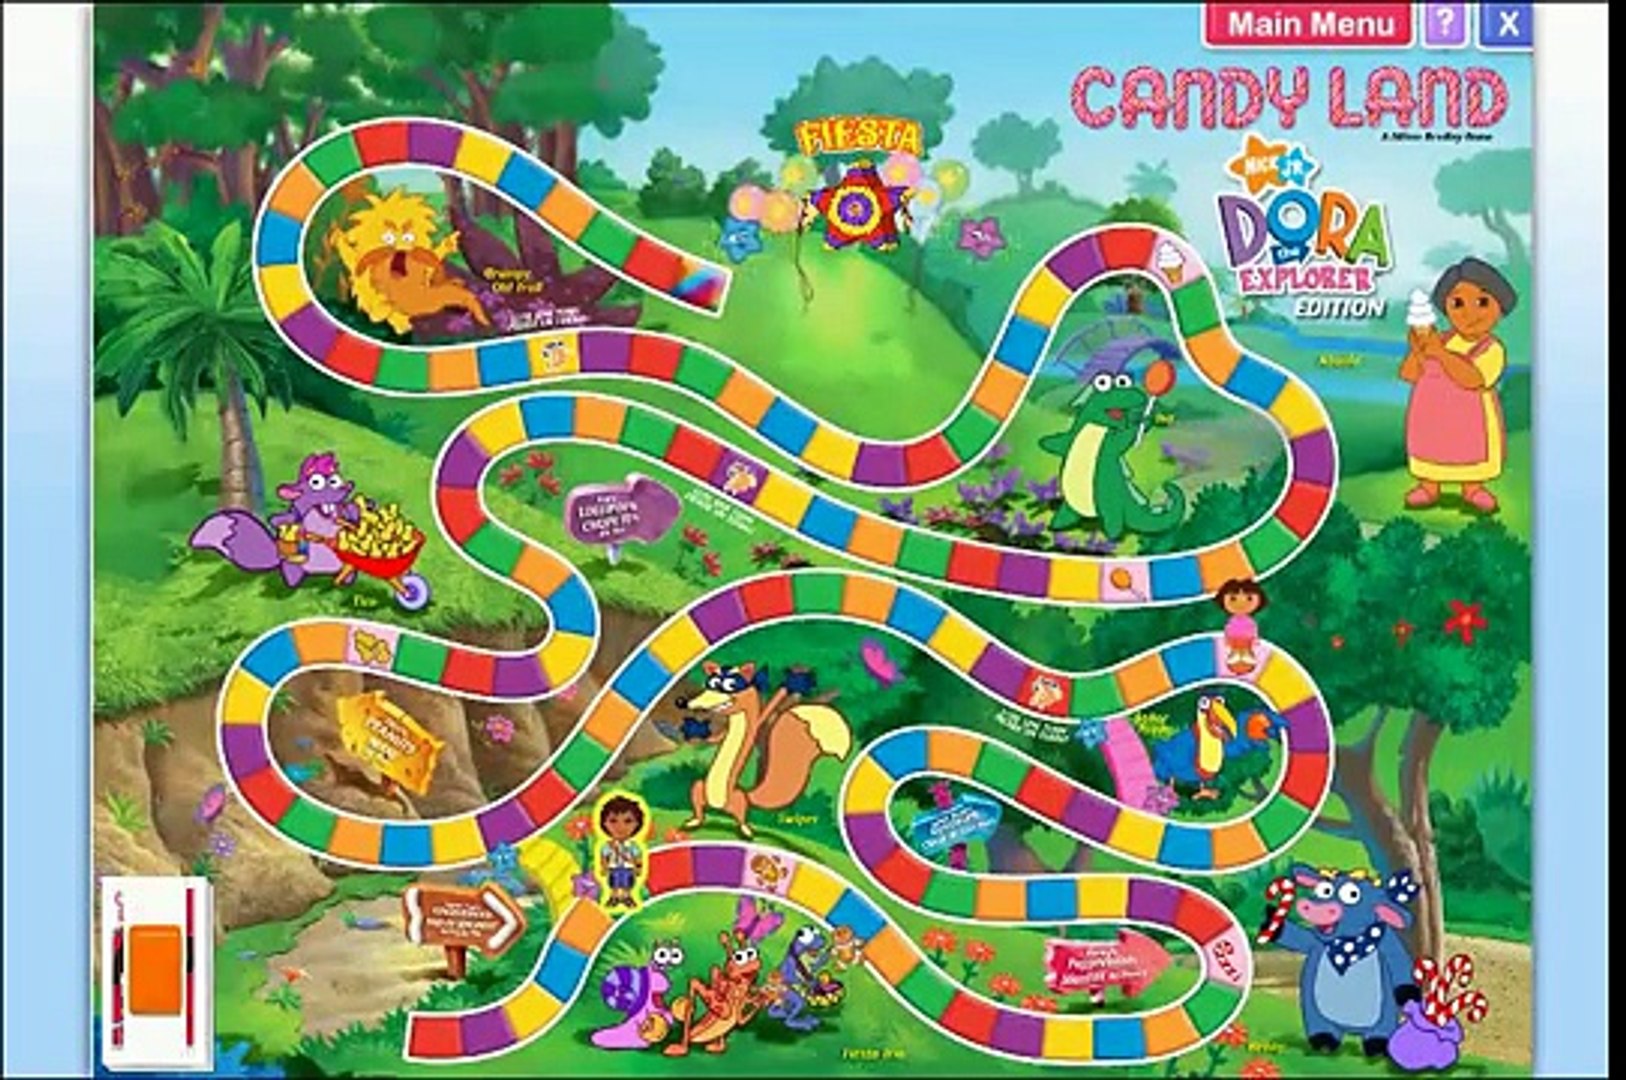 Dalset Utonallo Inflate Dora The Explorer Candy Land Full Game Online - Hot...